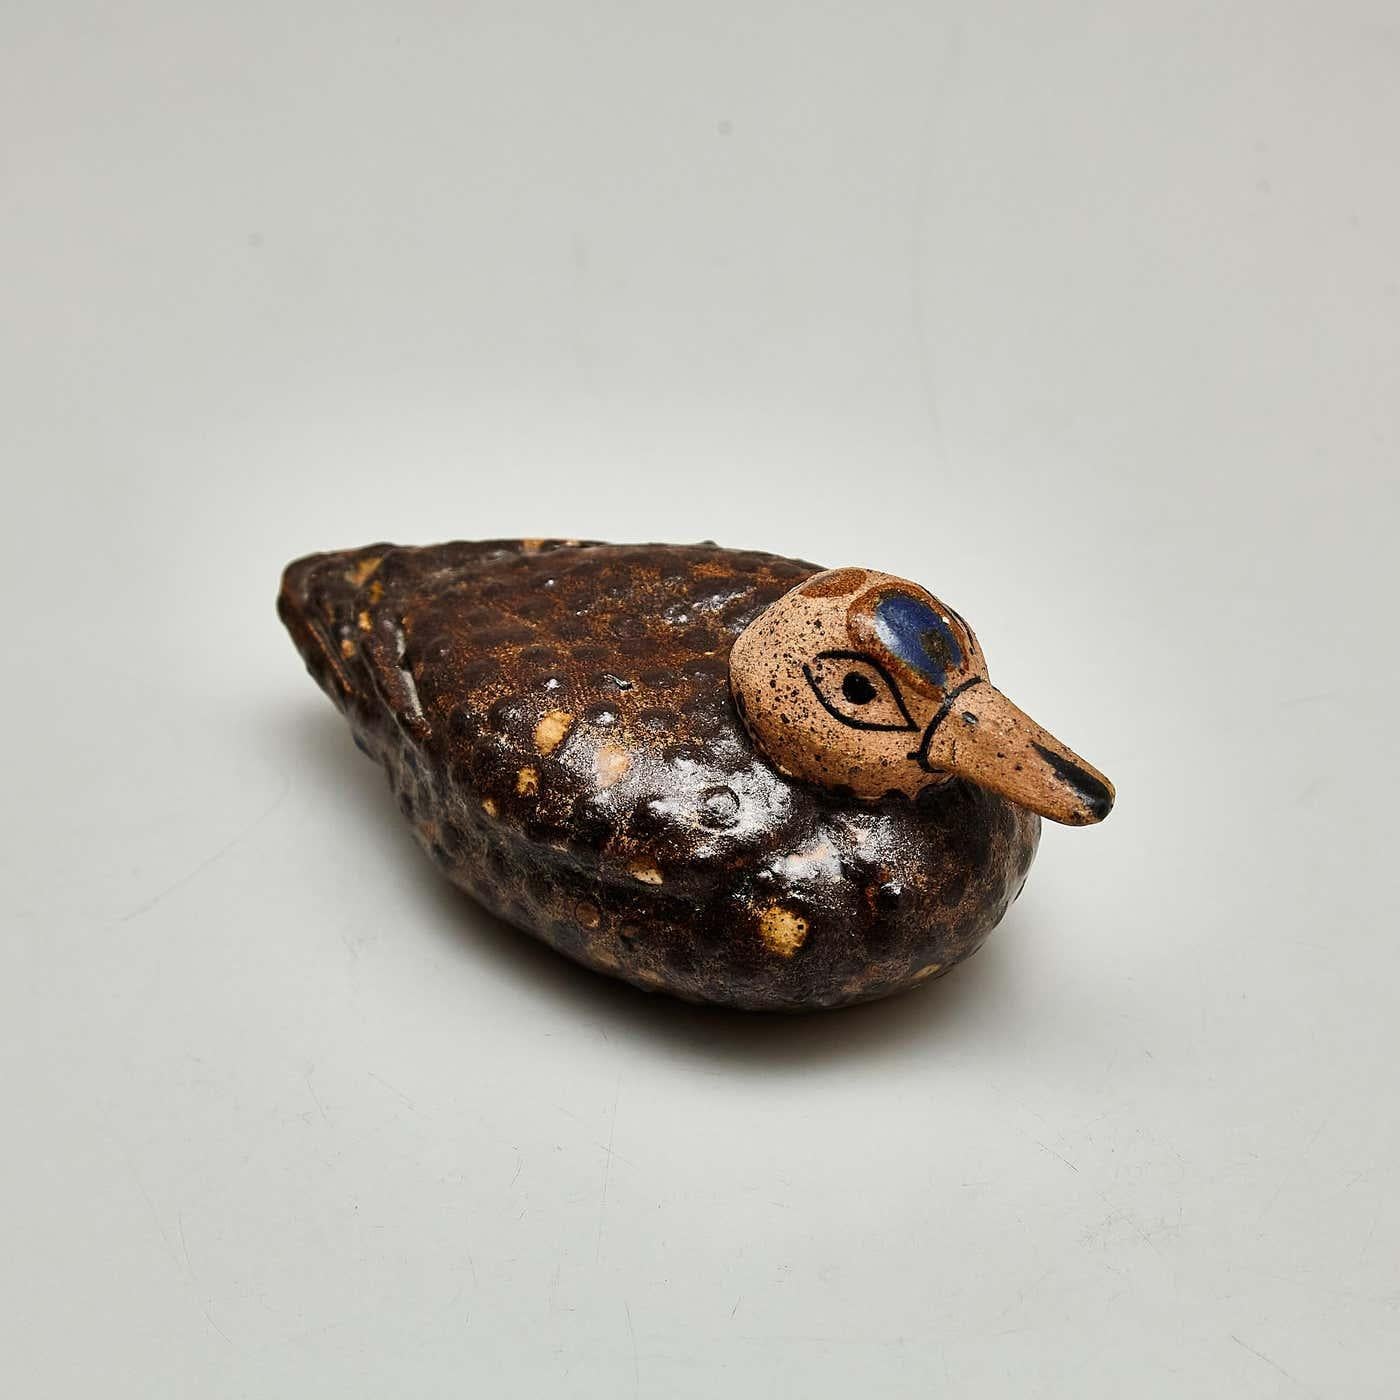 Lassen Sie sich von dem rustikalen Charme dieser traditionellen und primitiven Keramikskulptur verzaubern, die sorgfältig von Hand bemalt wurde, um das Wesen einer Ente einzufangen. Dieses entzückende Stück verkörpert mit seiner Schlichtheit und